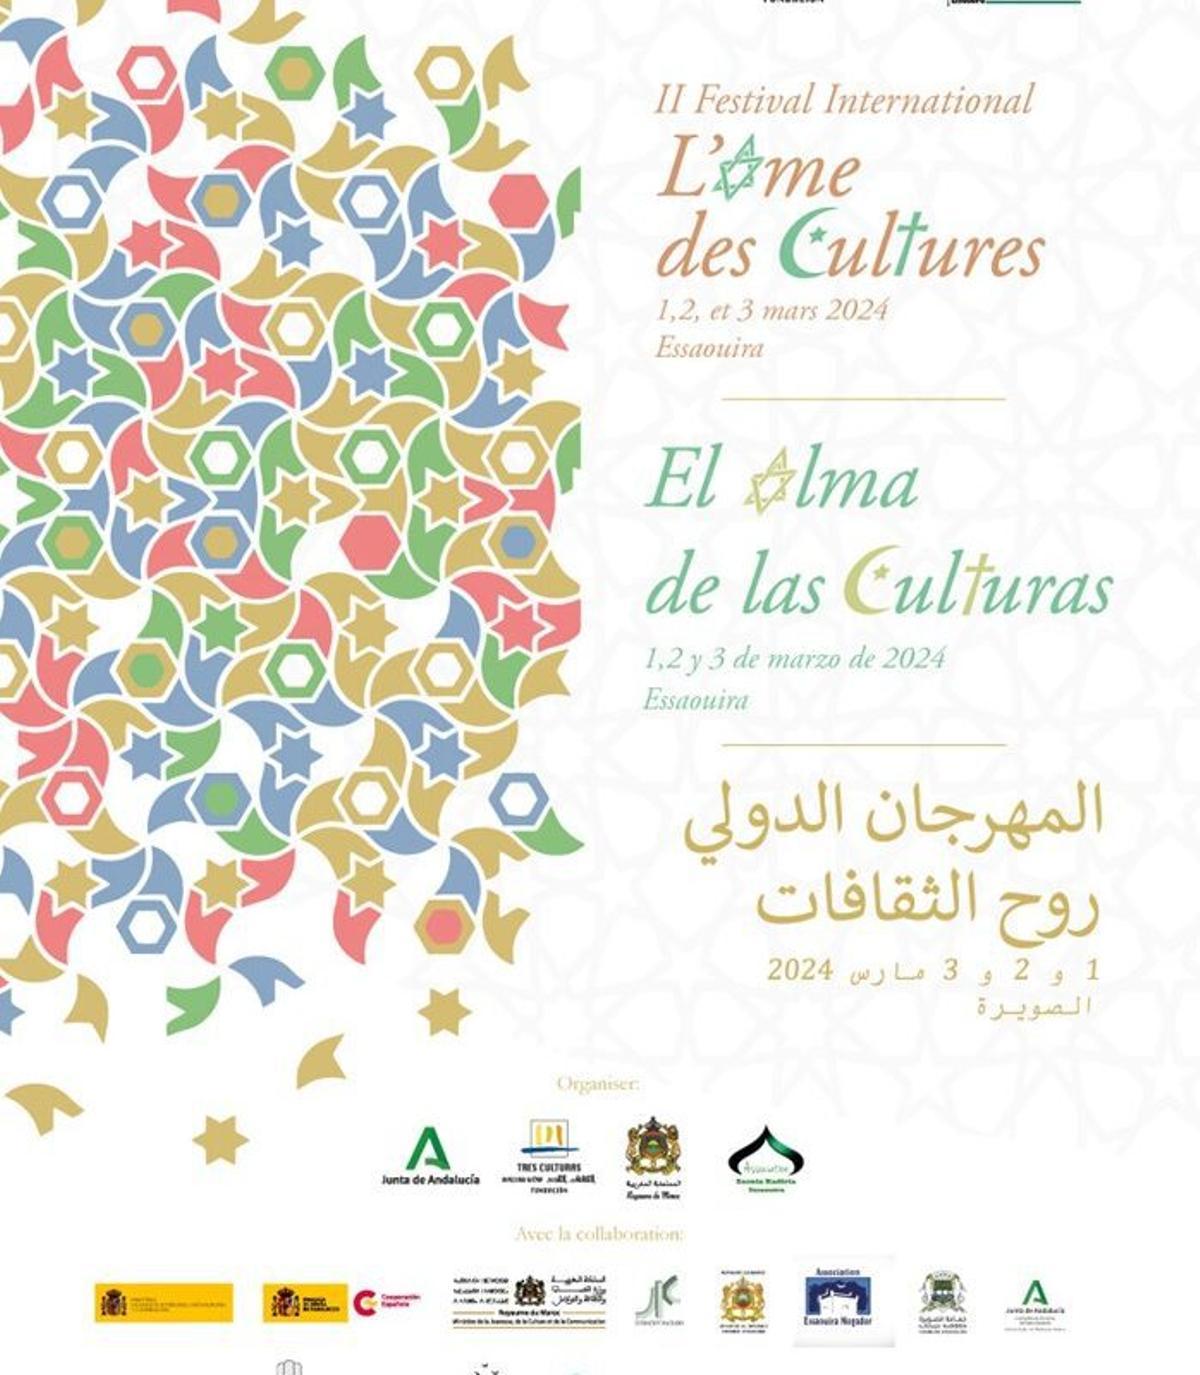 El Alma de las Culturas: convivencia entre hermandades musulmanas, cristianas y judías en Essaouira